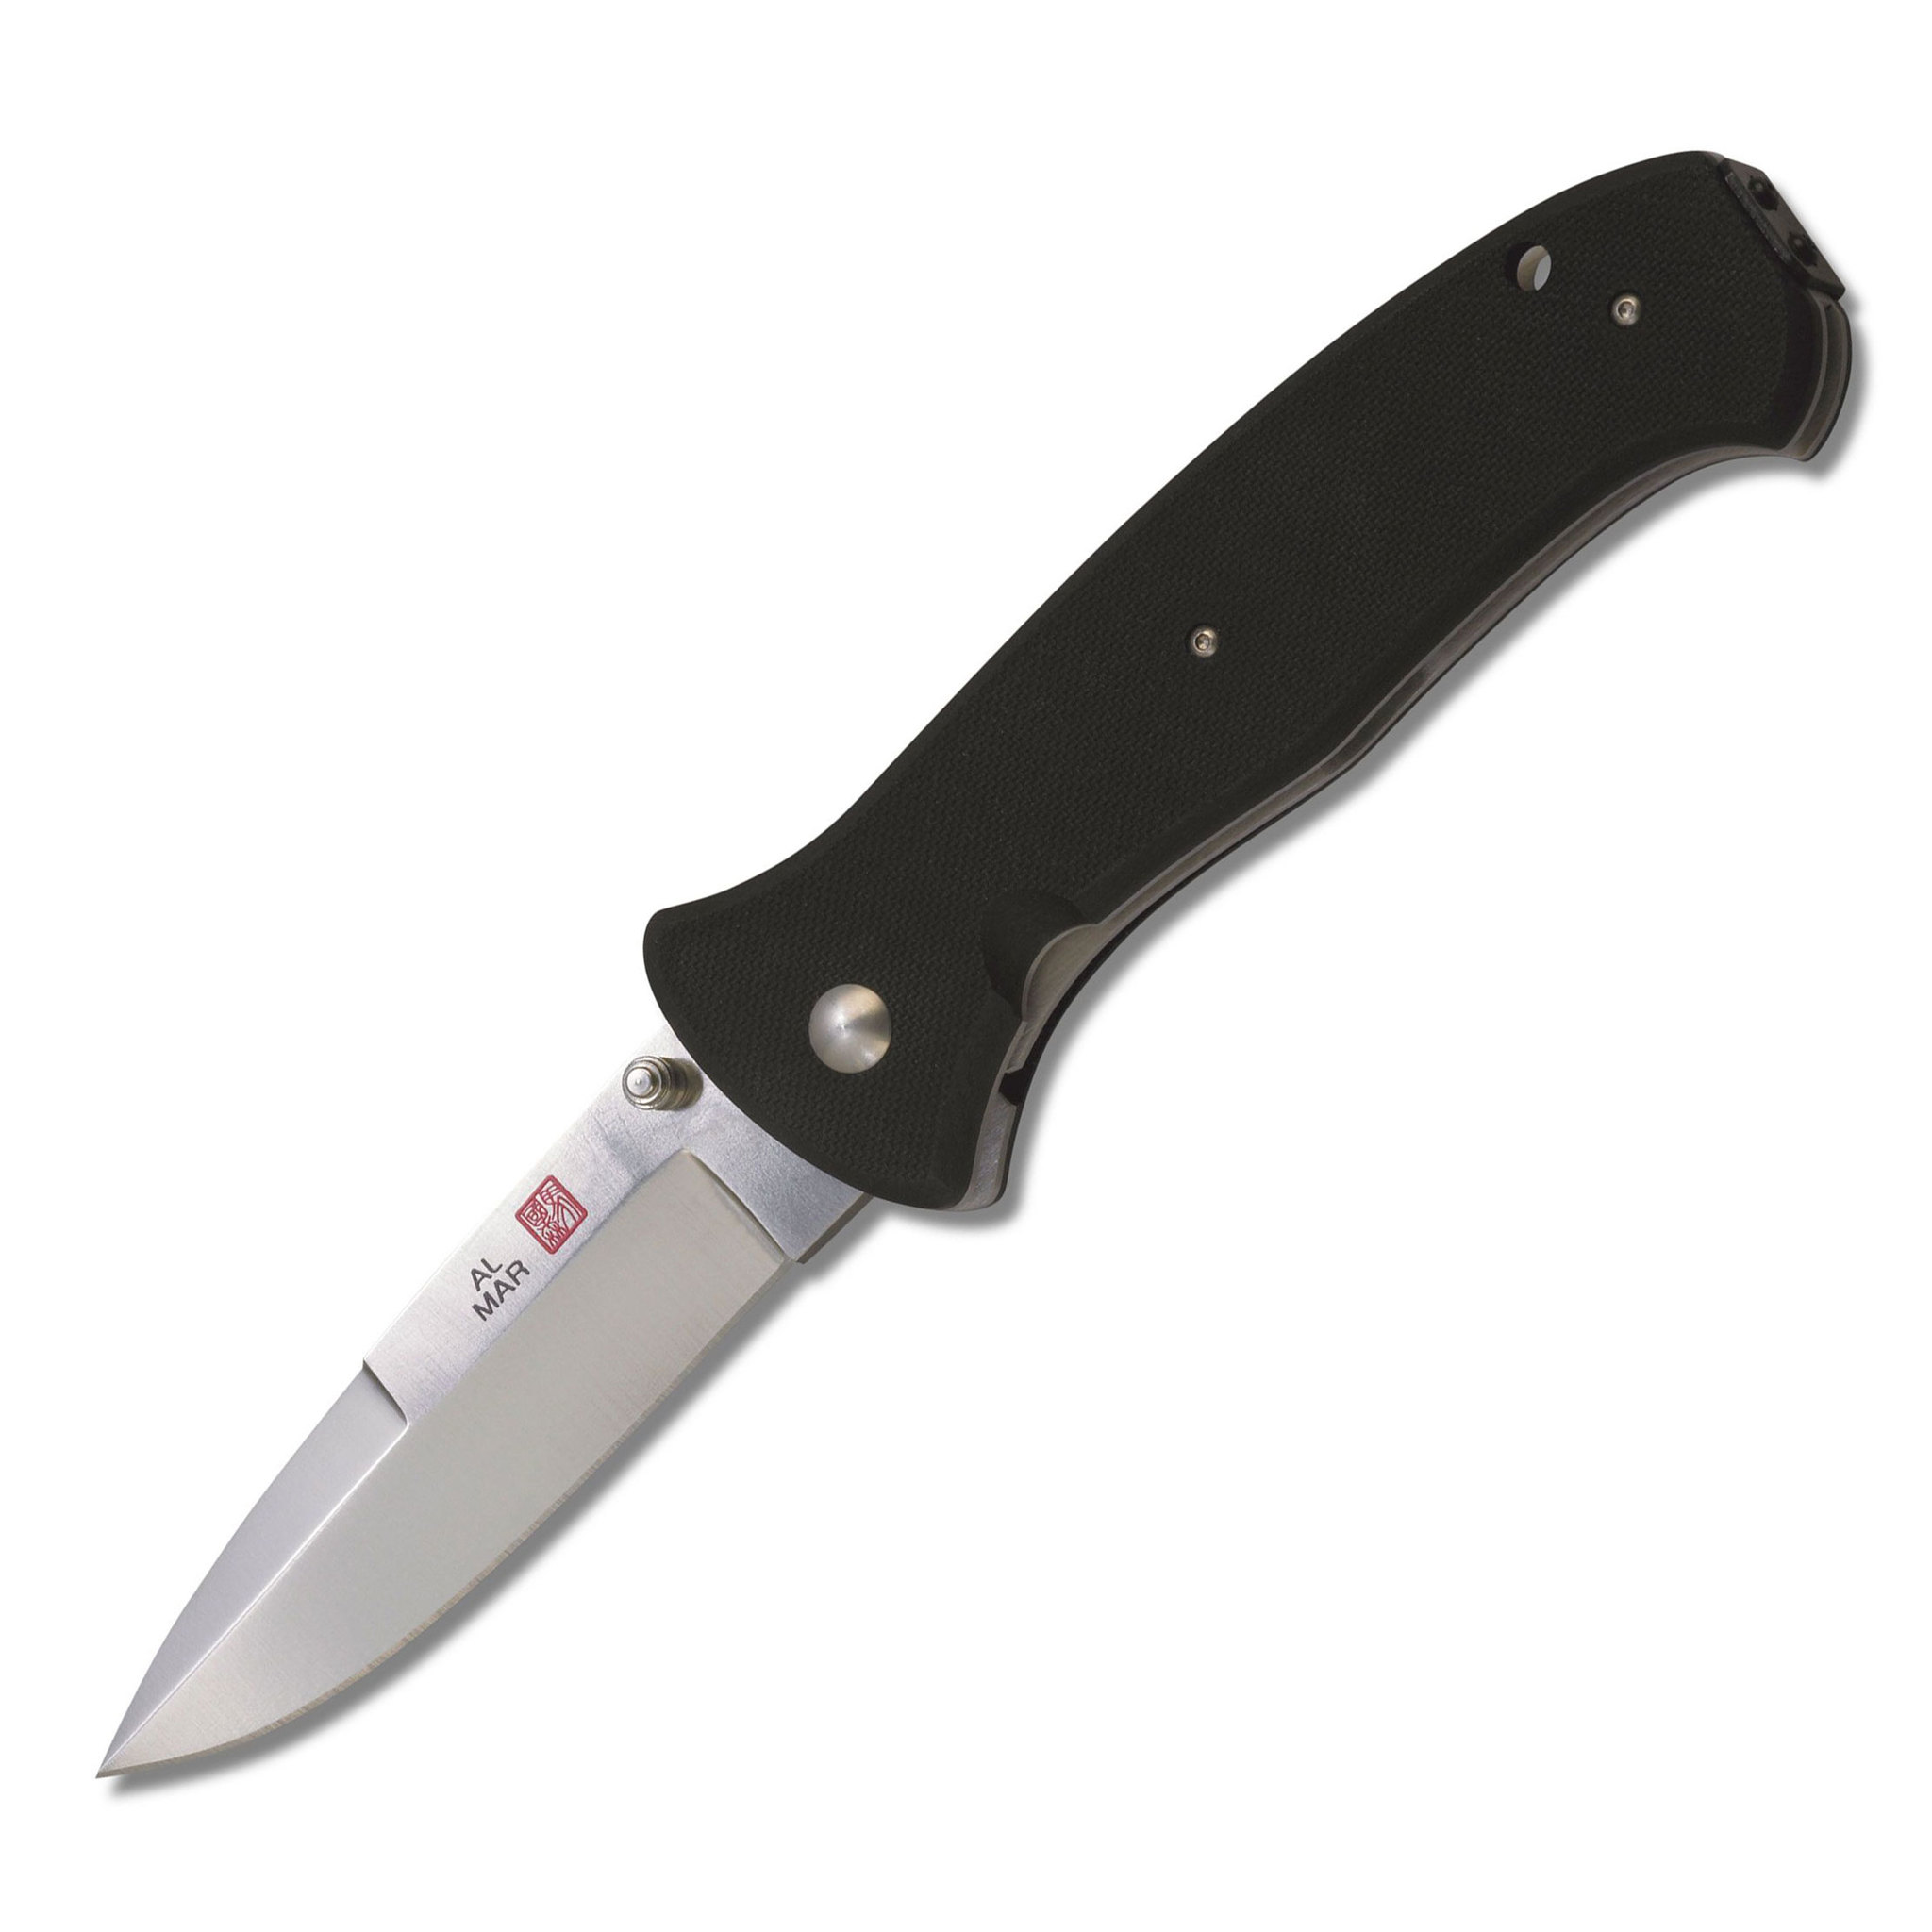 Нож складной Al Mar Mini Sere 2000™, сталь VG-10 Satin finish, рукоять стеклотекстолит G-10 складной нож автоматический hogue ex 04 wharncliffe сталь 154cm рукоять стеклотекстолит g mascus®